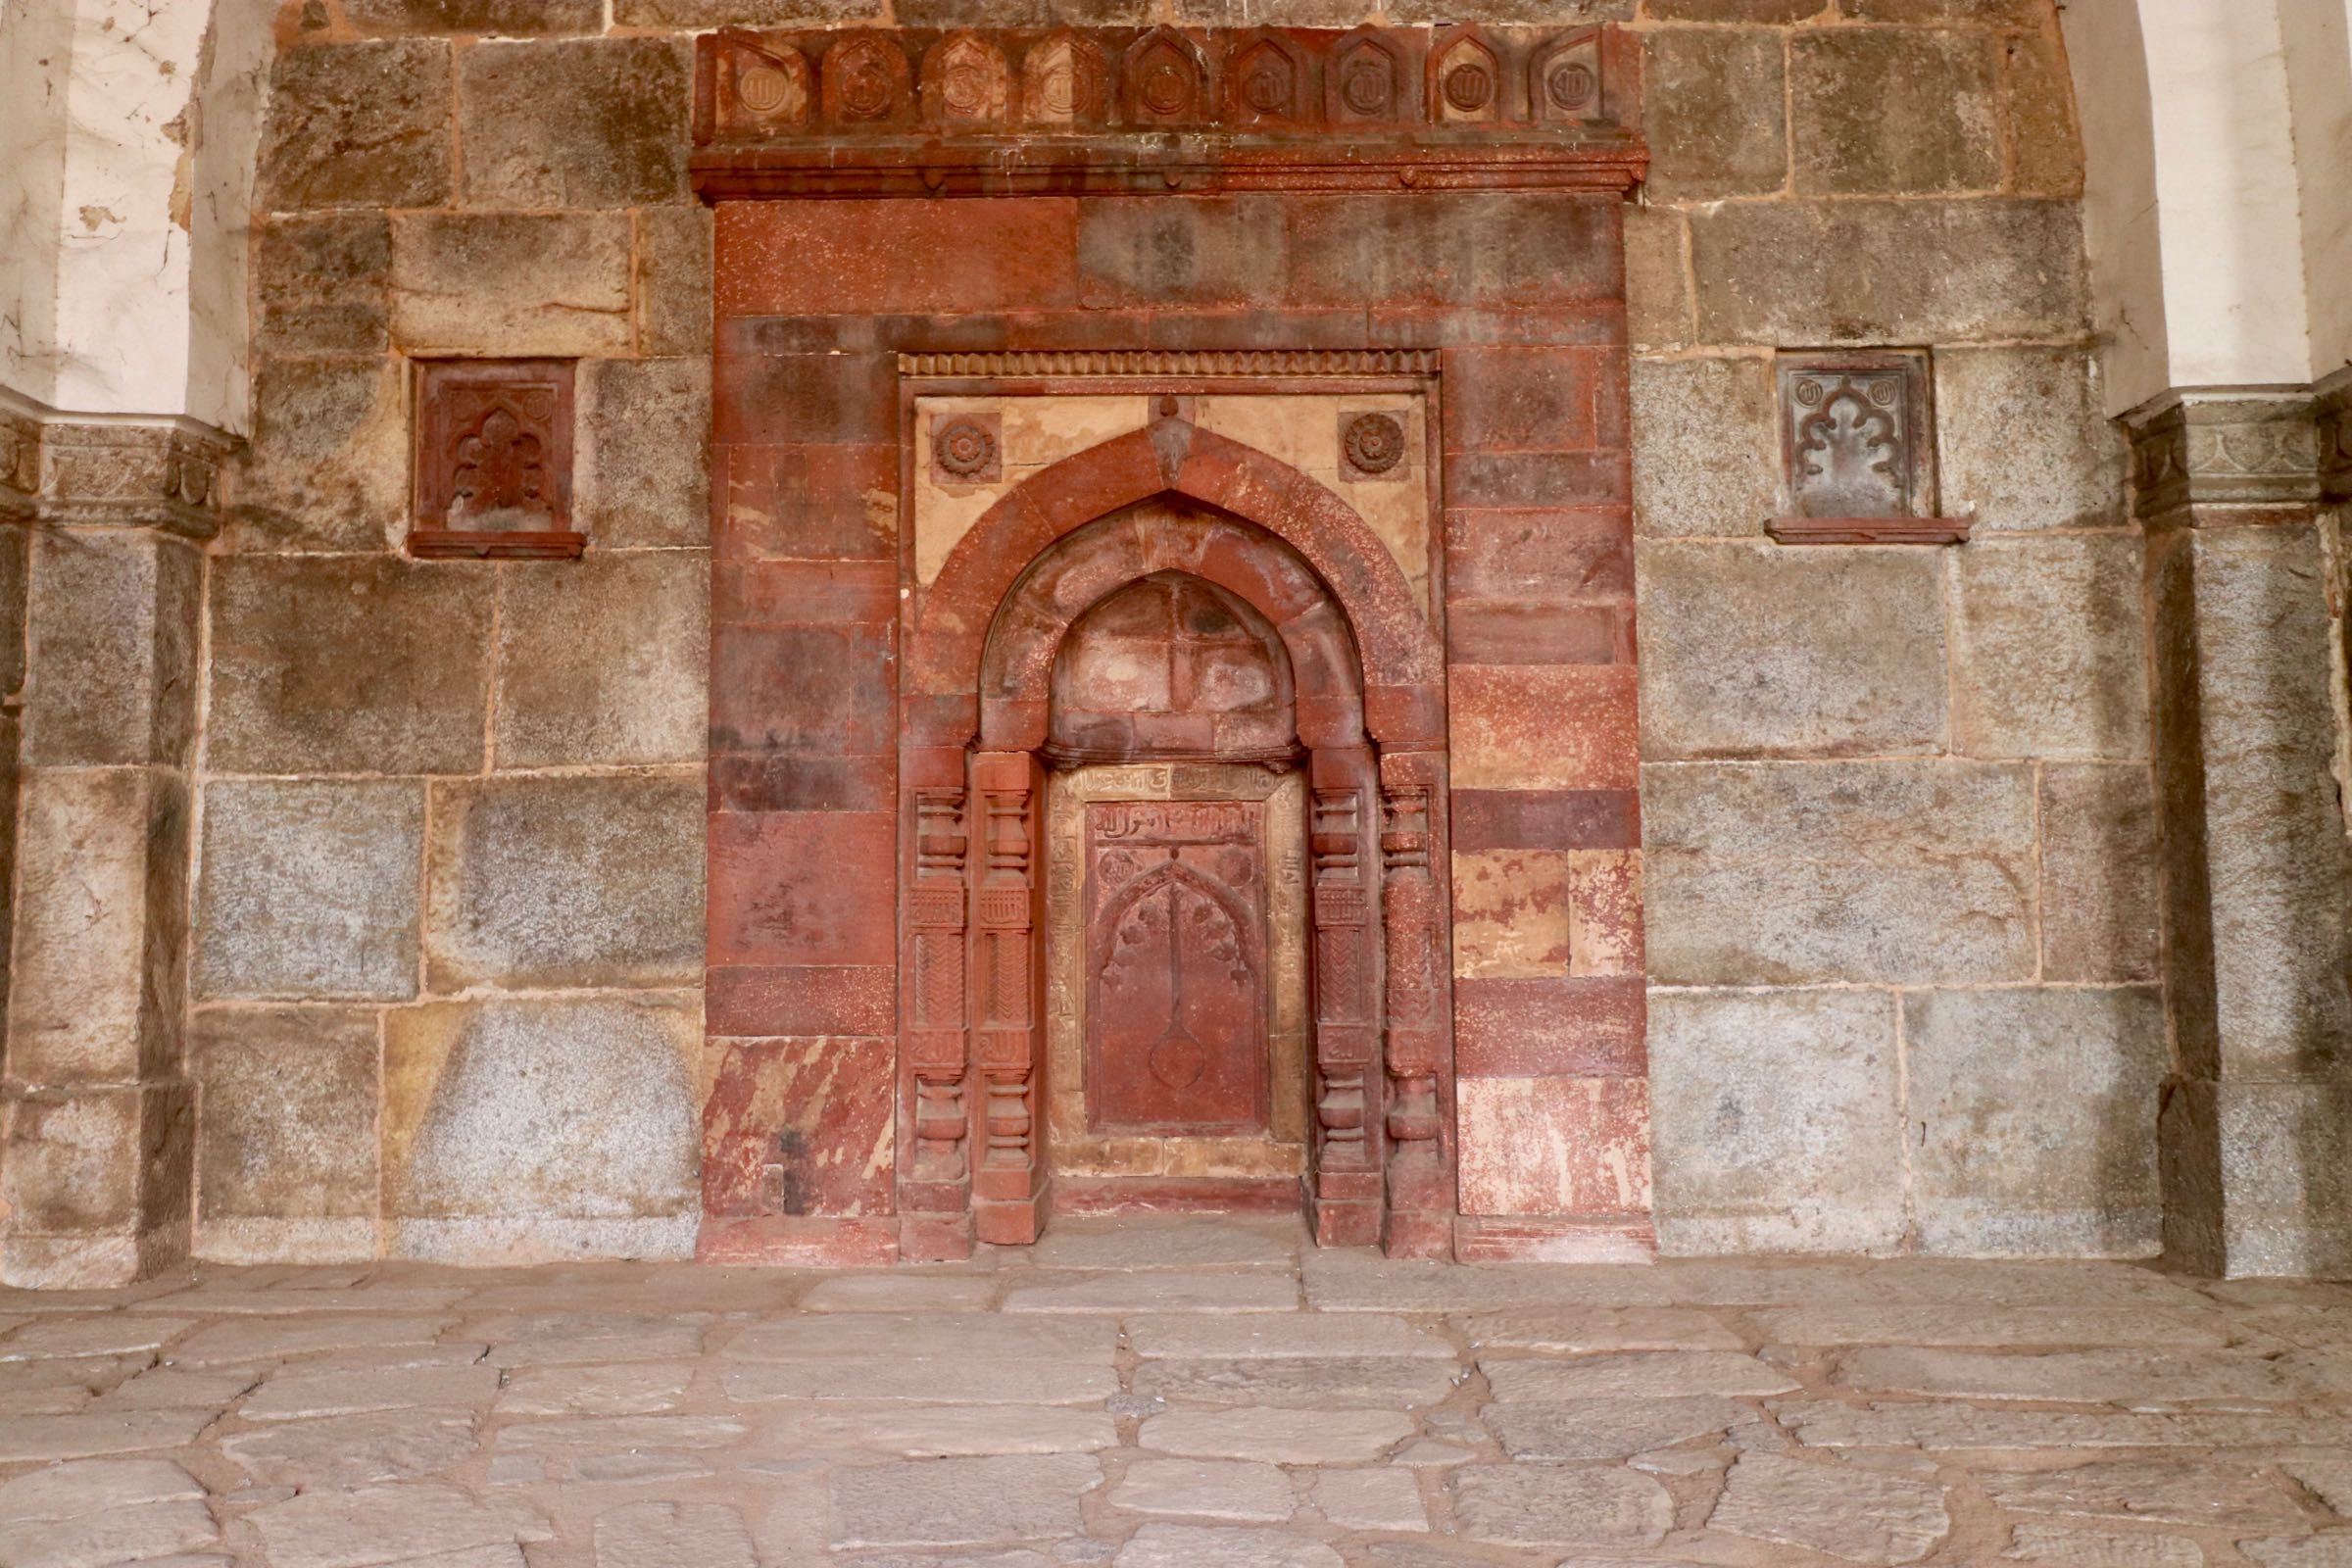 Wandnische einer Moschee am Humayun-Mausoleum, Delhi, Indien